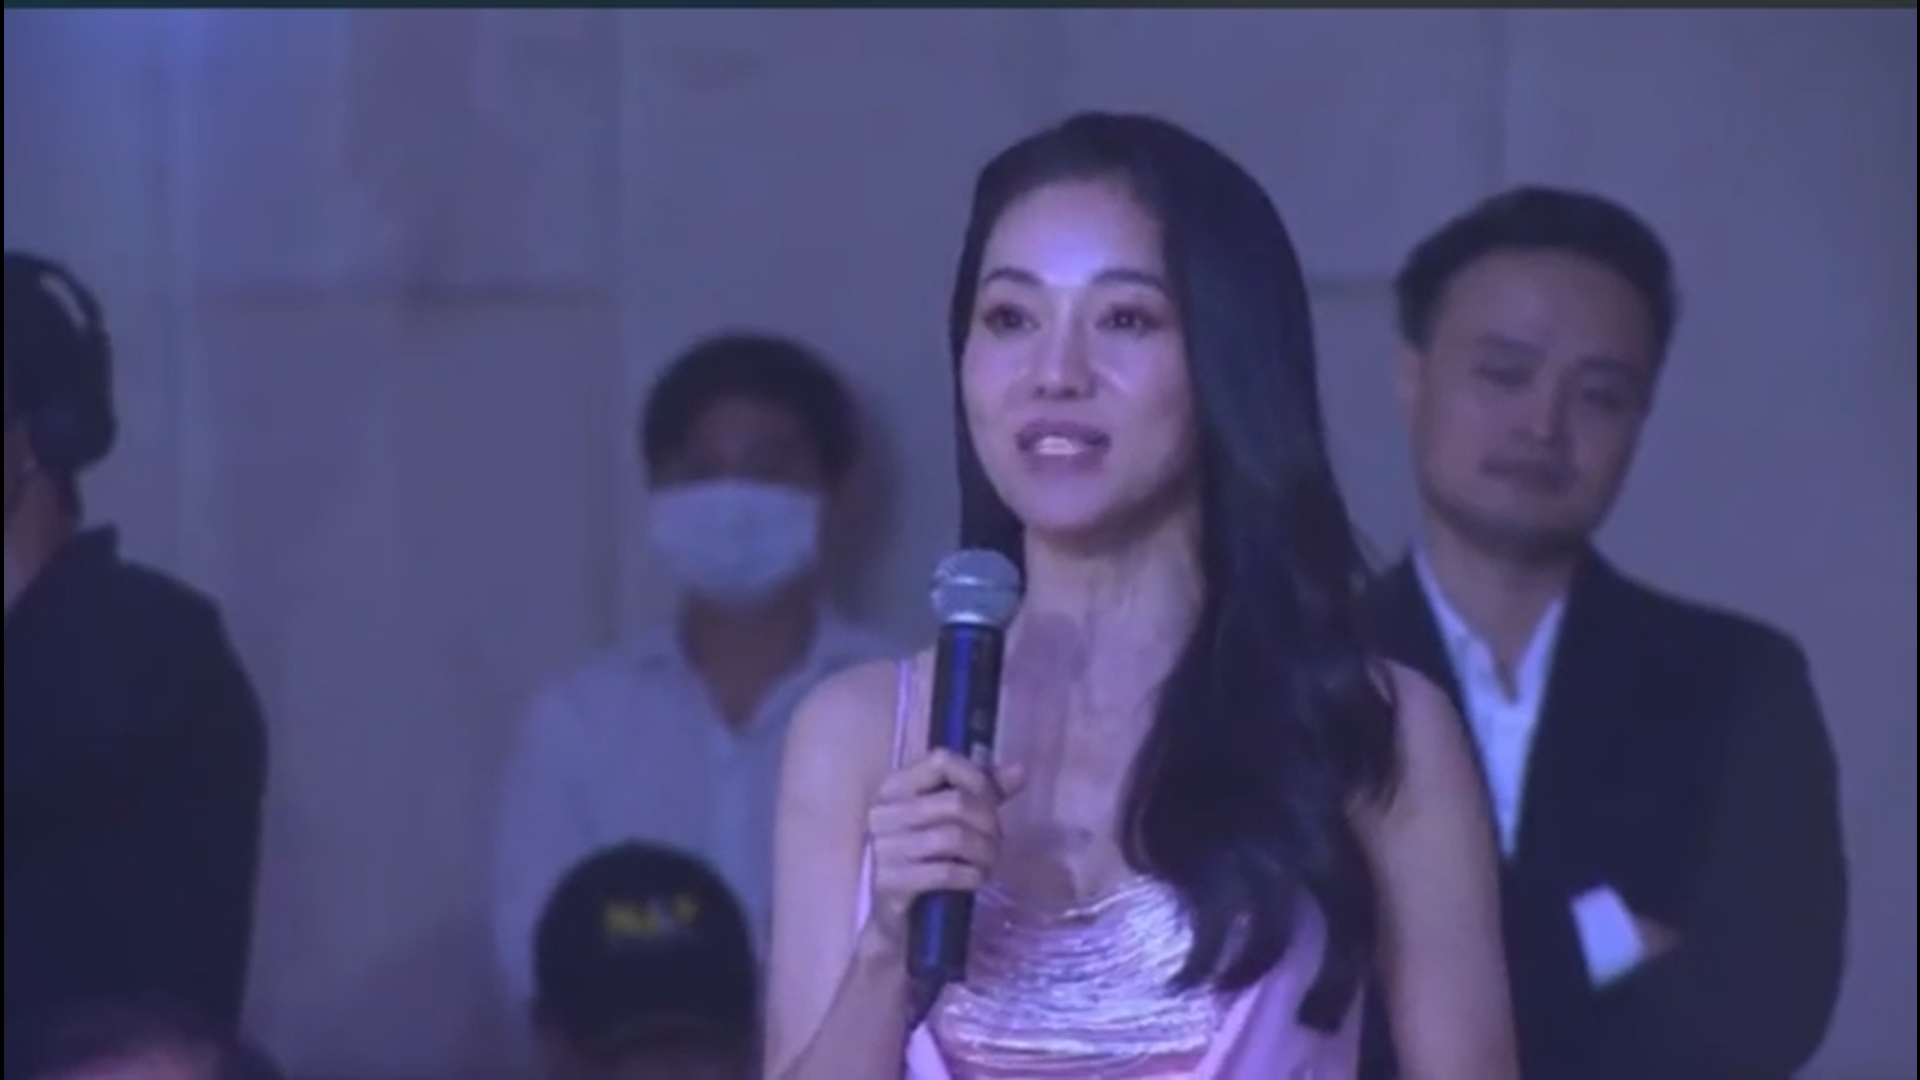 Vương miện lại trở về với Hoa hậu Mai Phương sau buổi đấu giá từ thiện, netizen thắc mắc danh tính nhà hảo tâm - ảnh 4